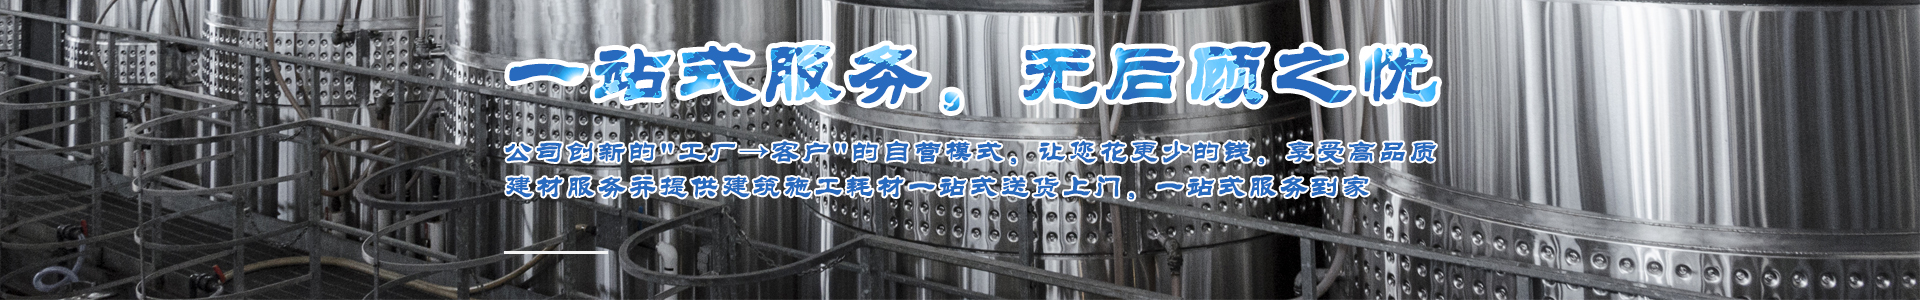 柳州雙華鋼模板_雙華圓柱鋼模板_雙華鋼模板廠家-六順雙華金屬材料有限公司